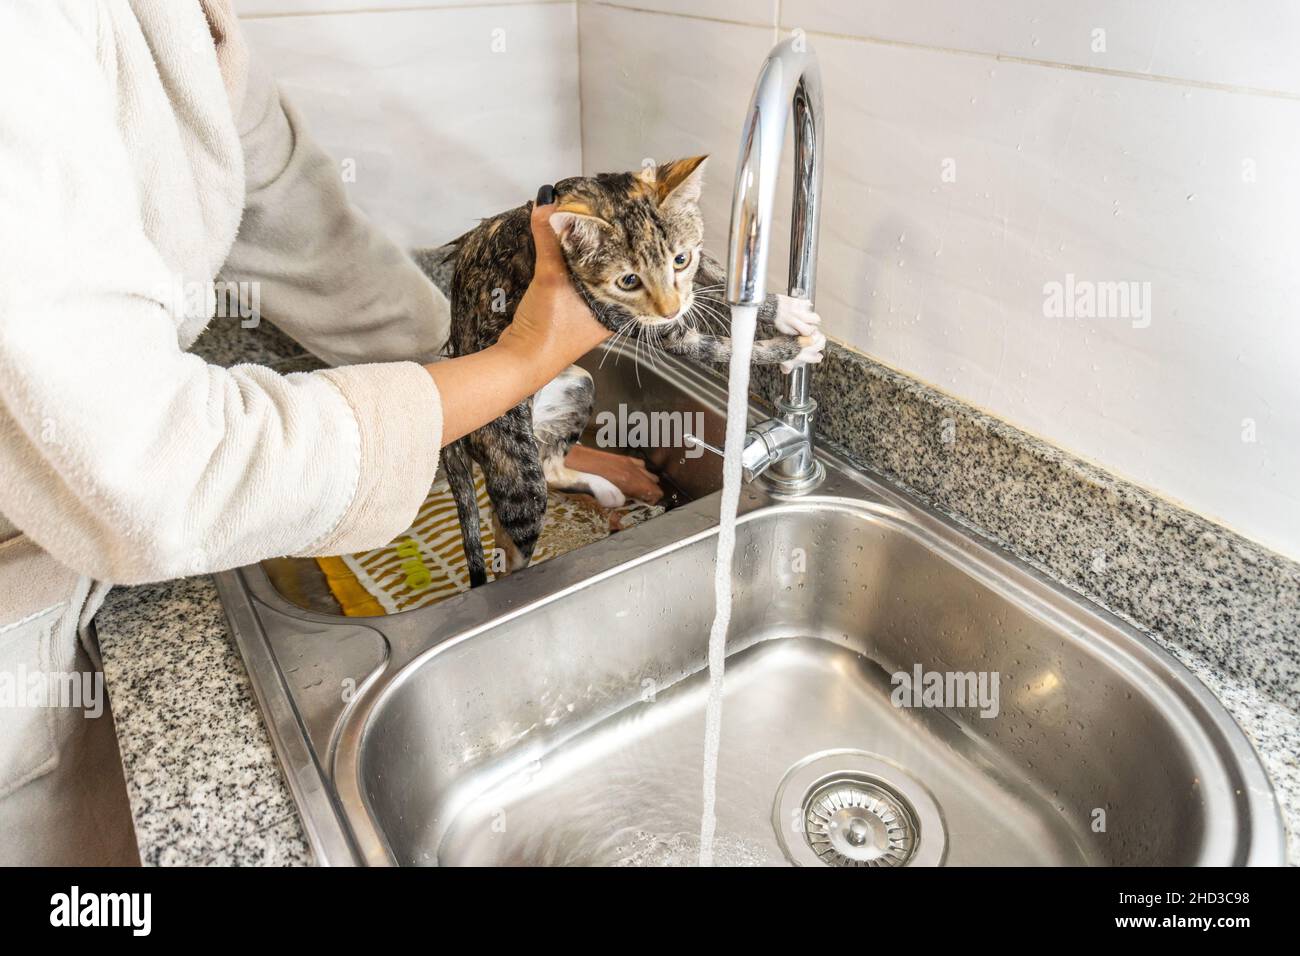 Mani di una persona irriconoscibile bagnando un gatto grigio nella lavastoviglie della cucina Foto Stock